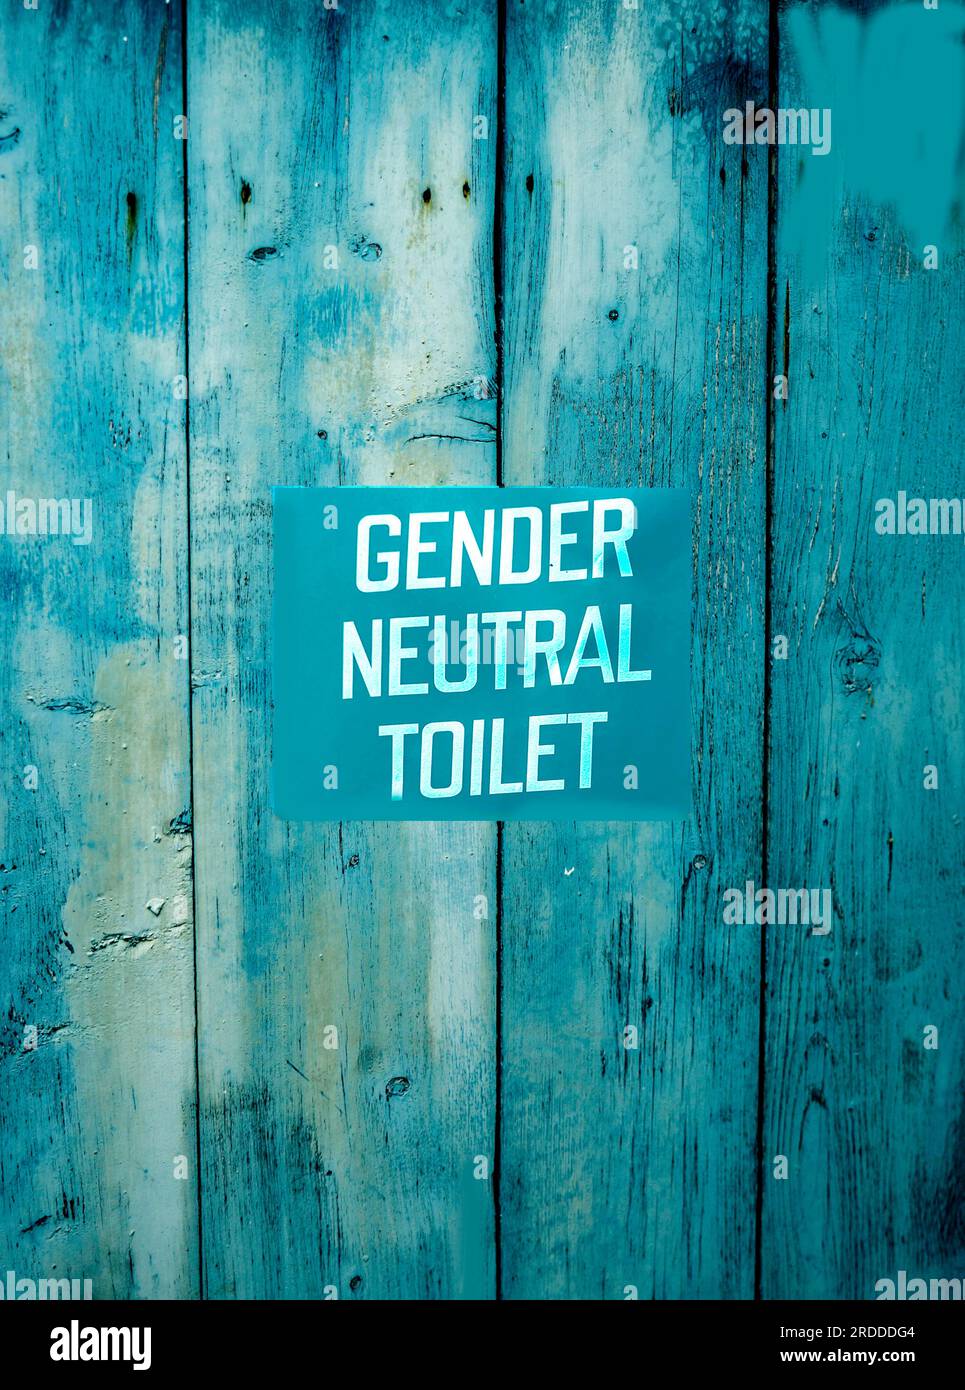 Eine Toilettentür mit einem geschlechtsneutralen Schild. Stockfoto